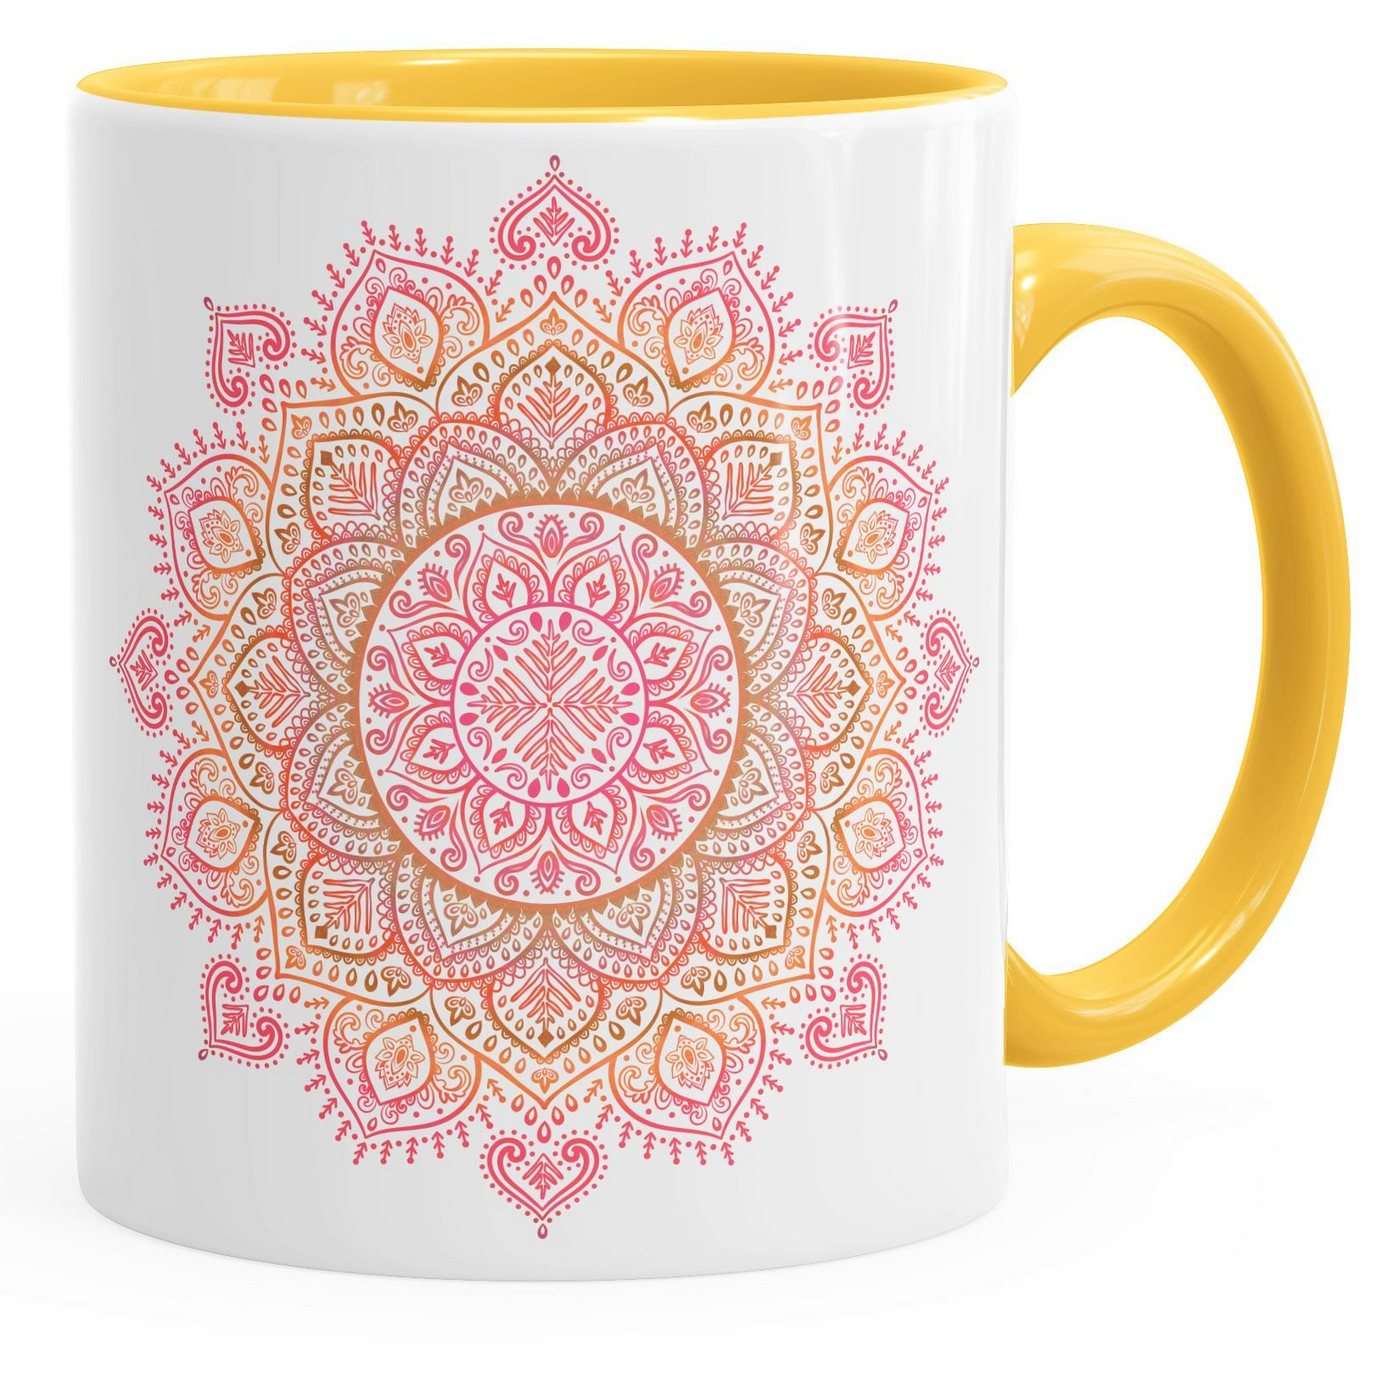 Autiga Tasse Kaffee-Tasse Mandala Ethno Boho Kaffeetasse Teetasse Keramiktasse mit Innenfarbe Autiga®, Keramik von Autiga